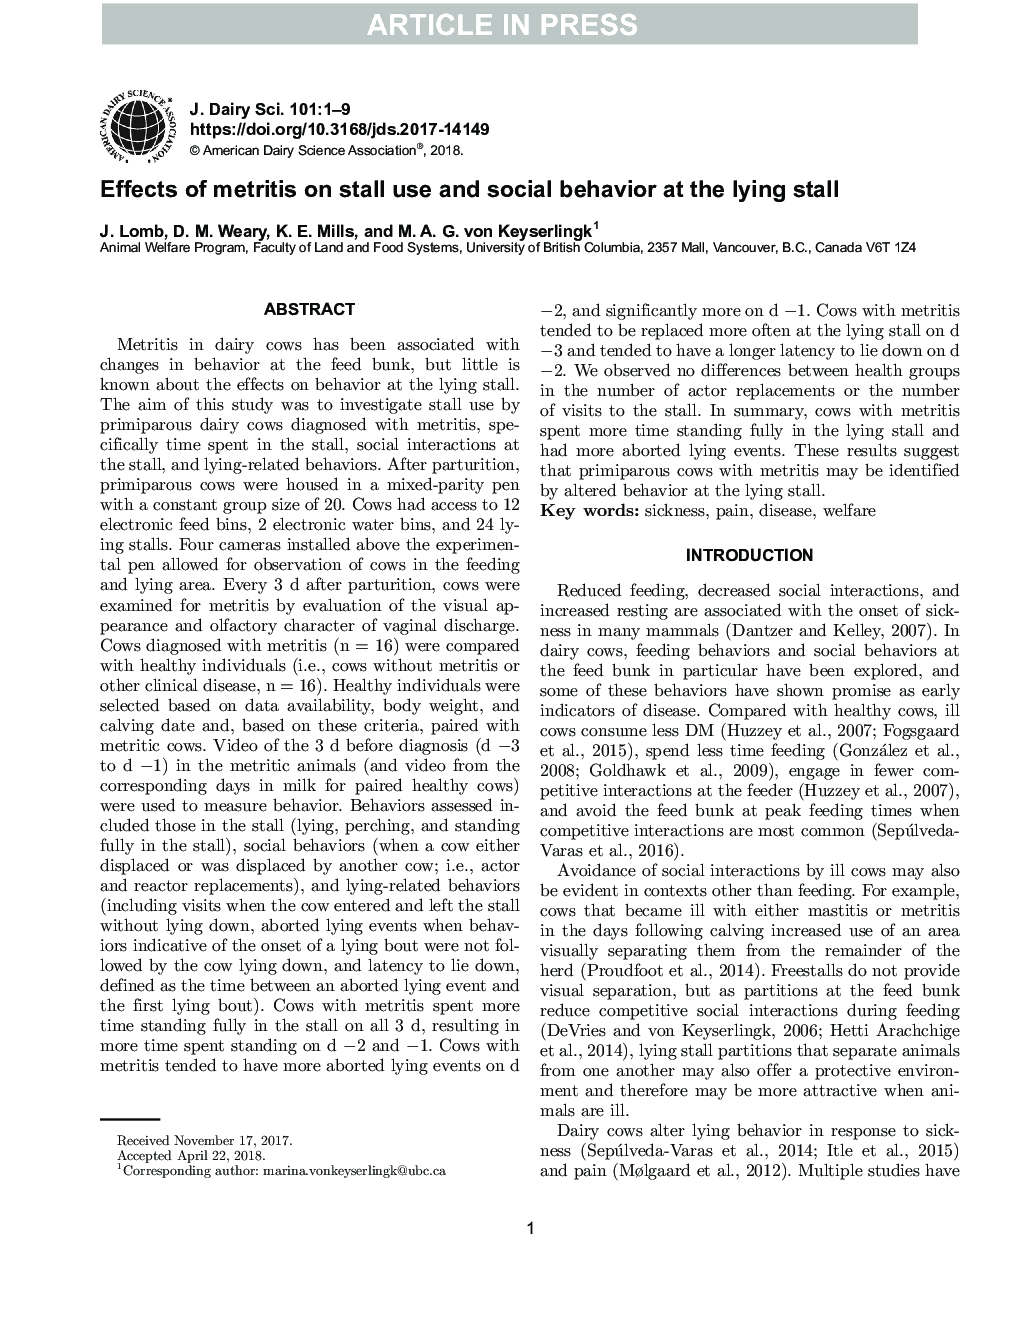 اثرات متتریت در استفاده از استال و رفتار اجتماعی در دروازه 